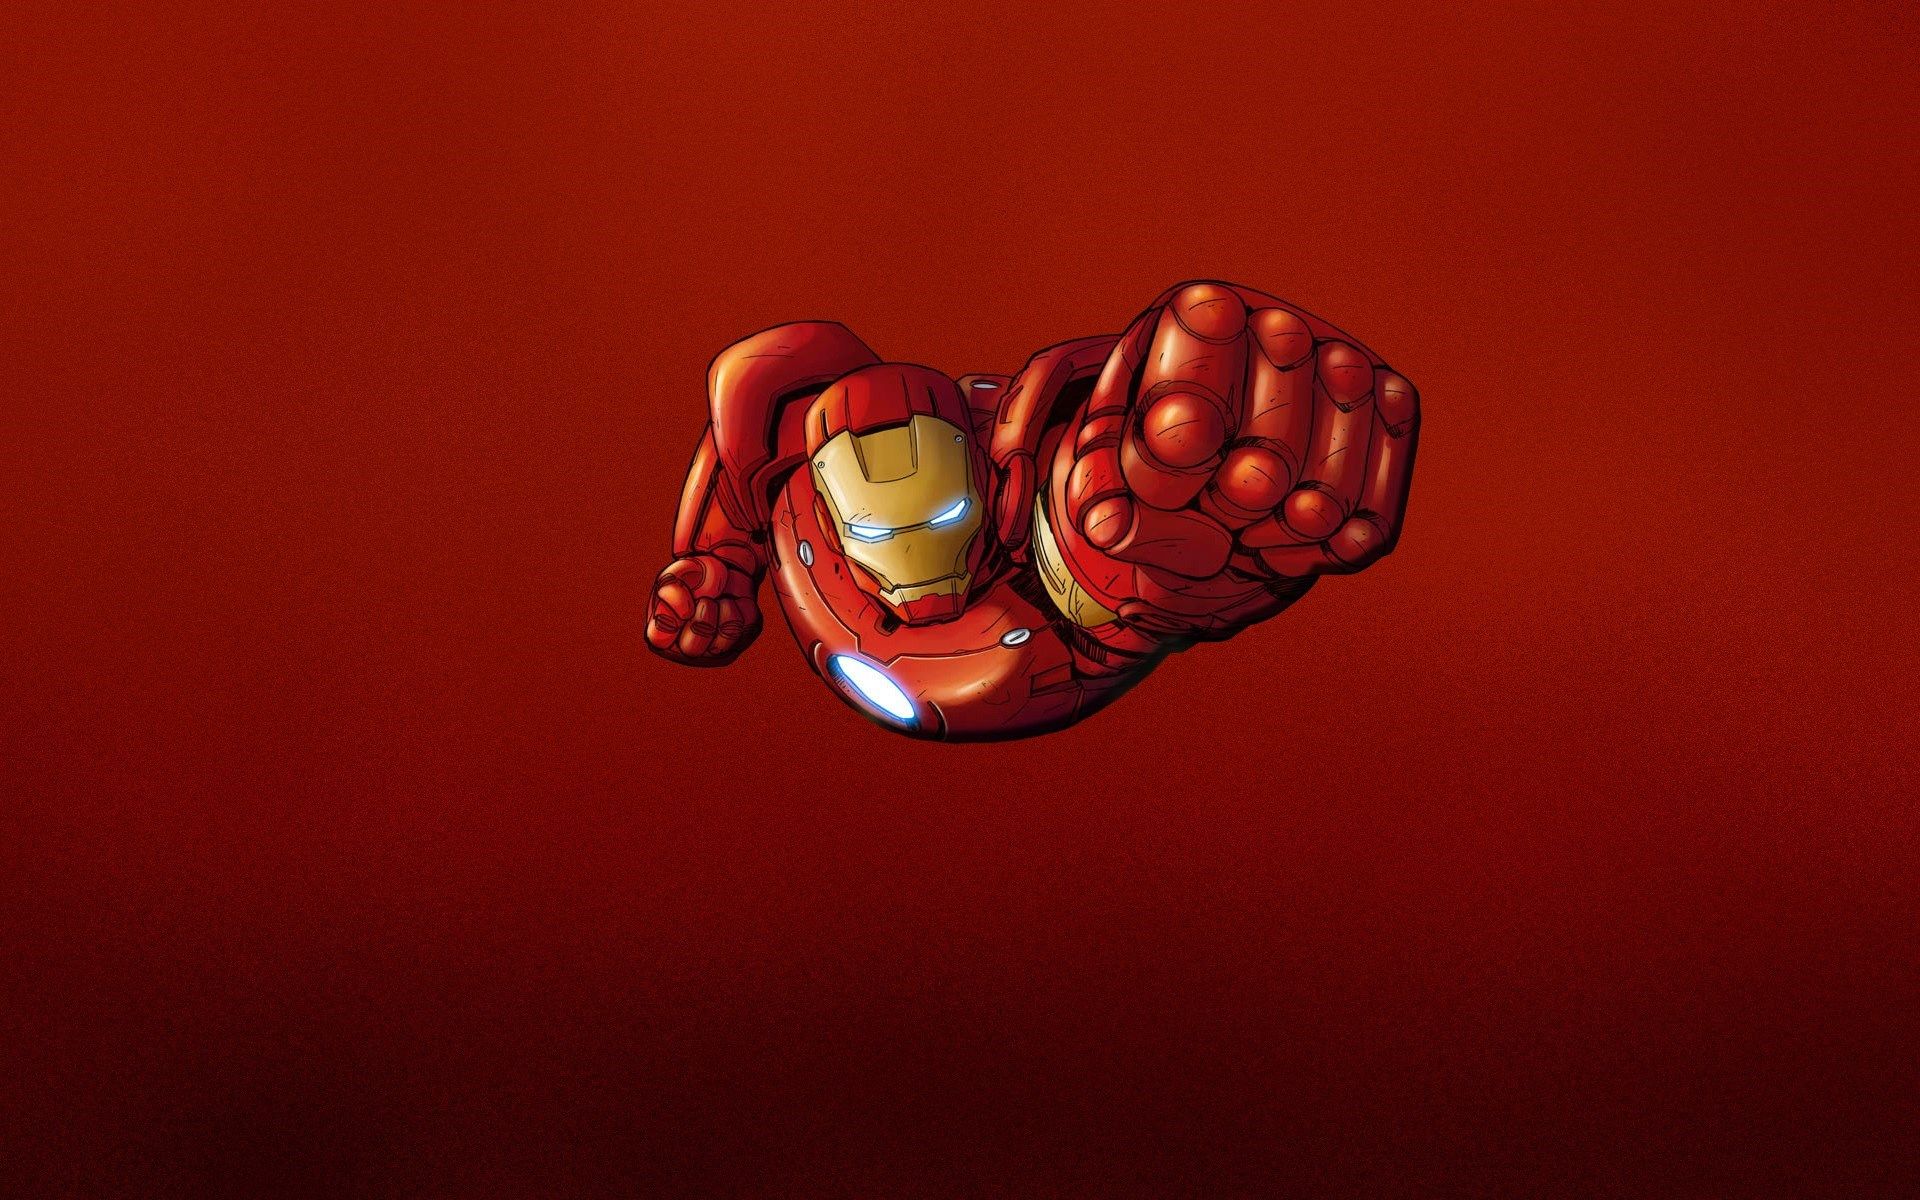 Iron Man Red Minimalism HD Wallpaper - FreeWallsUp